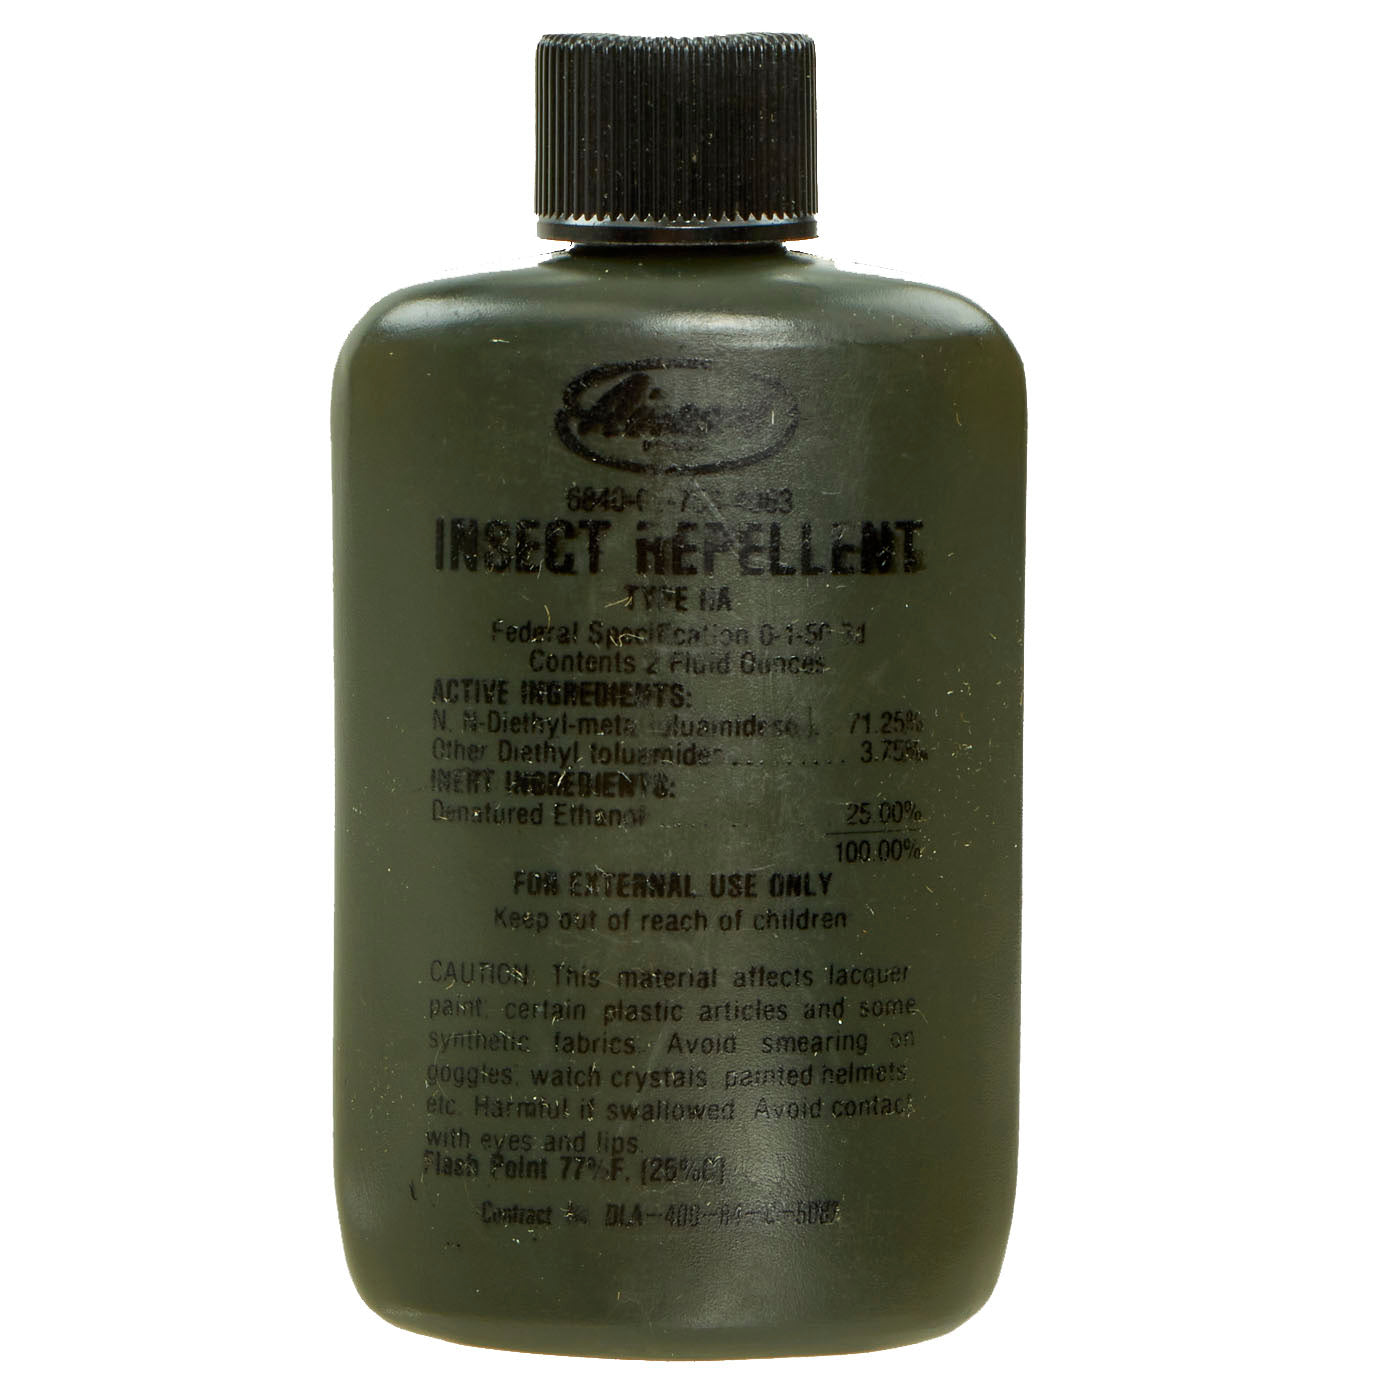 Original U.S. Post-Vietnam War Type IIA Insect Repellent “Bug